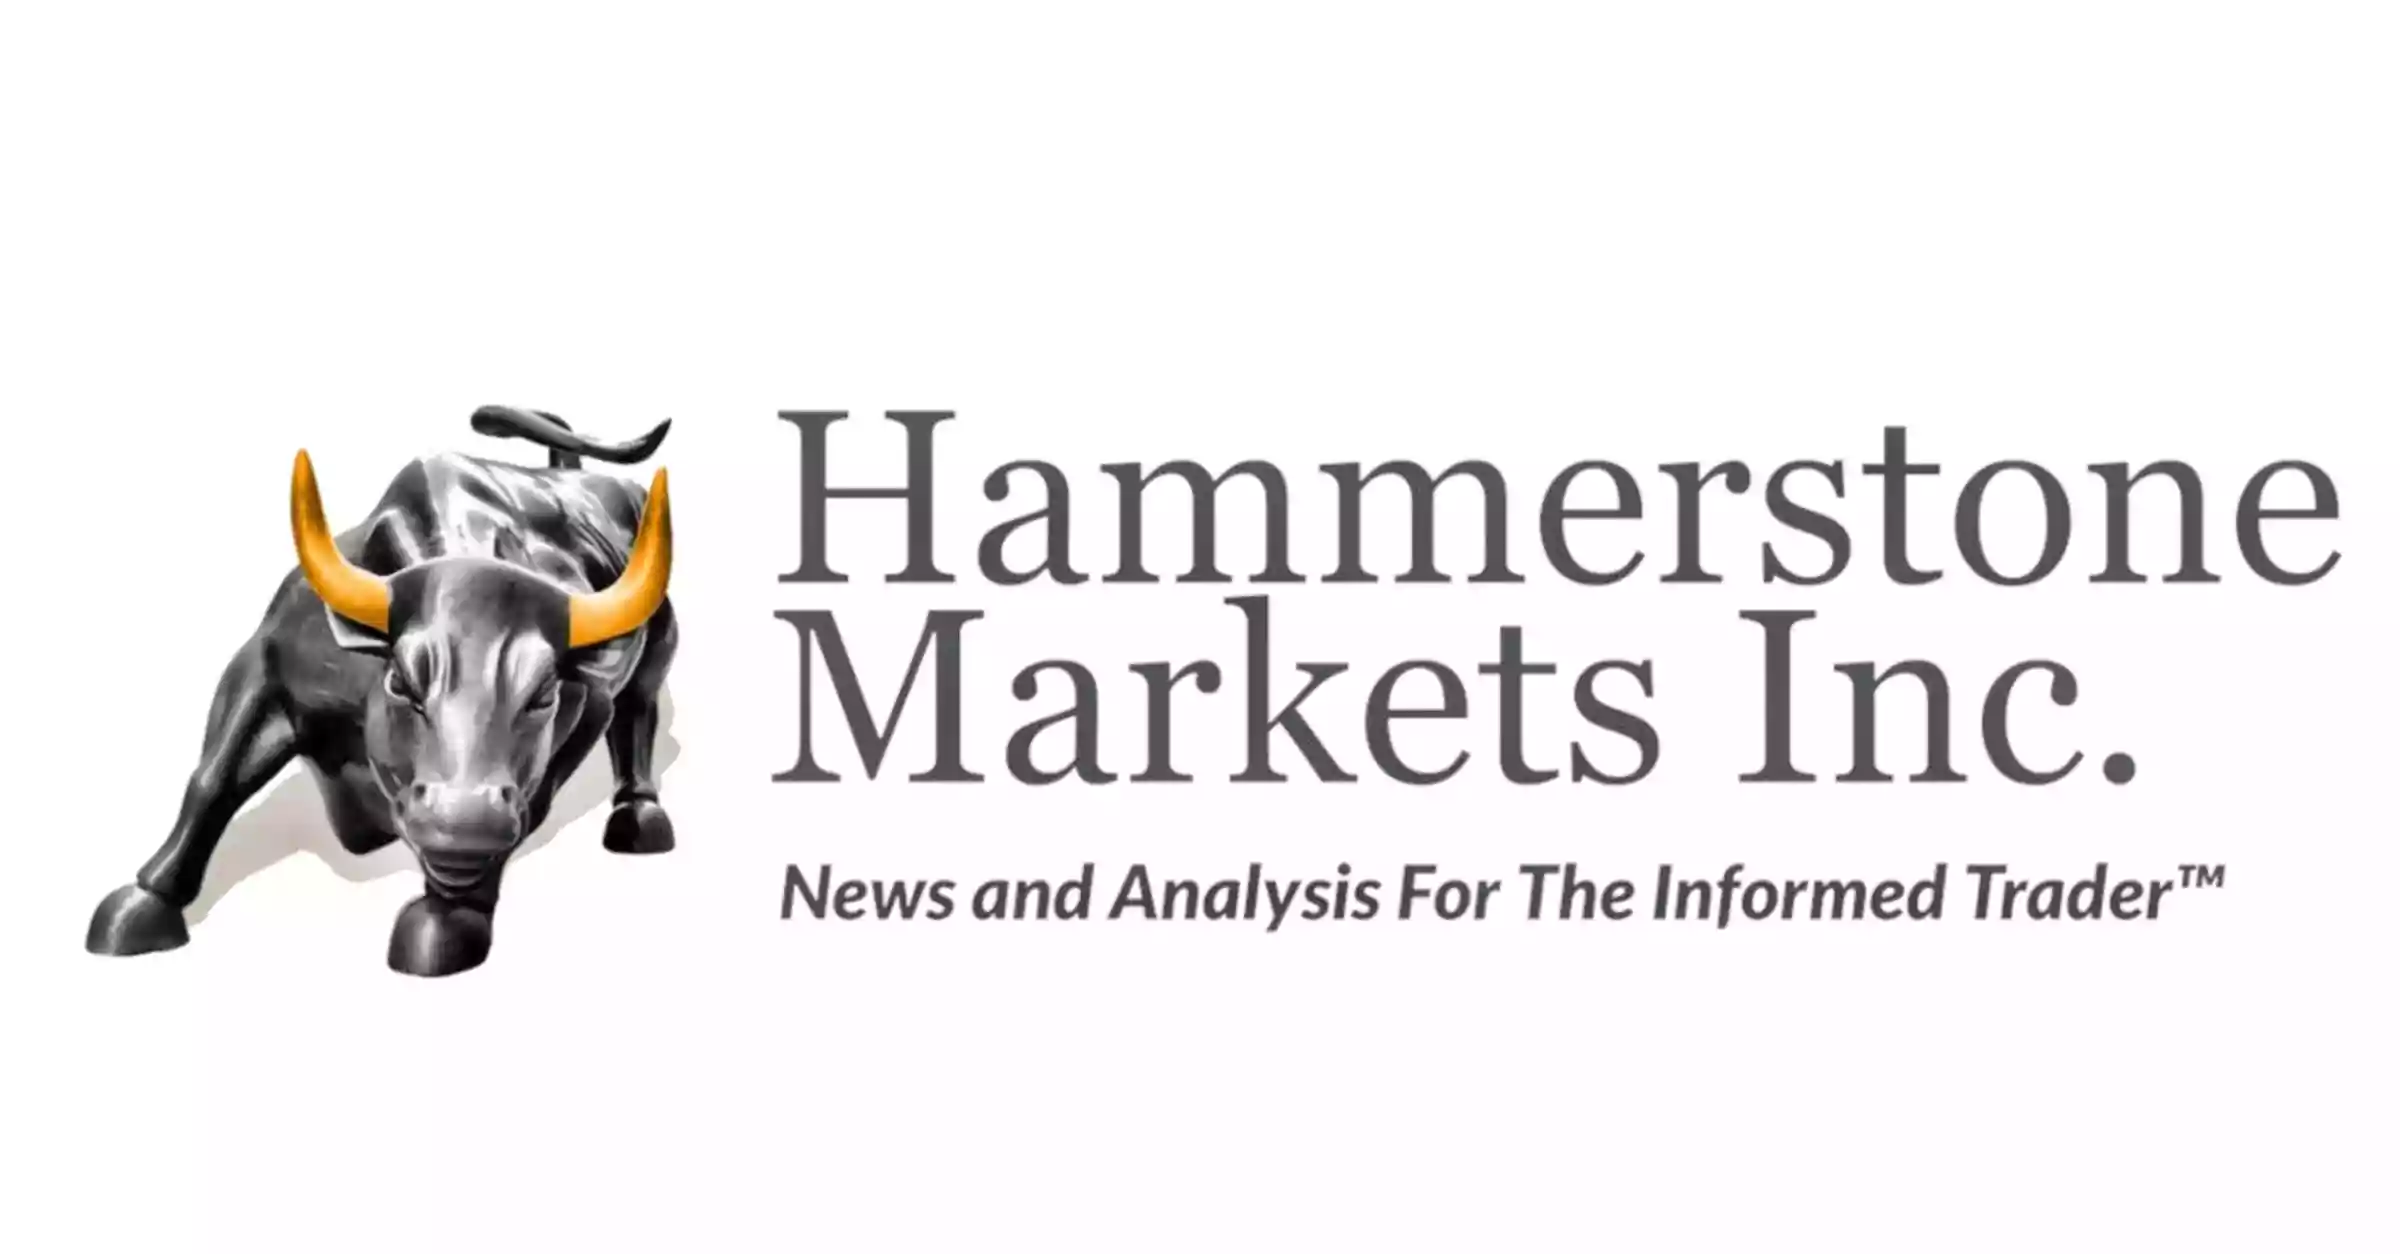 Hammerstone Markets, Inc